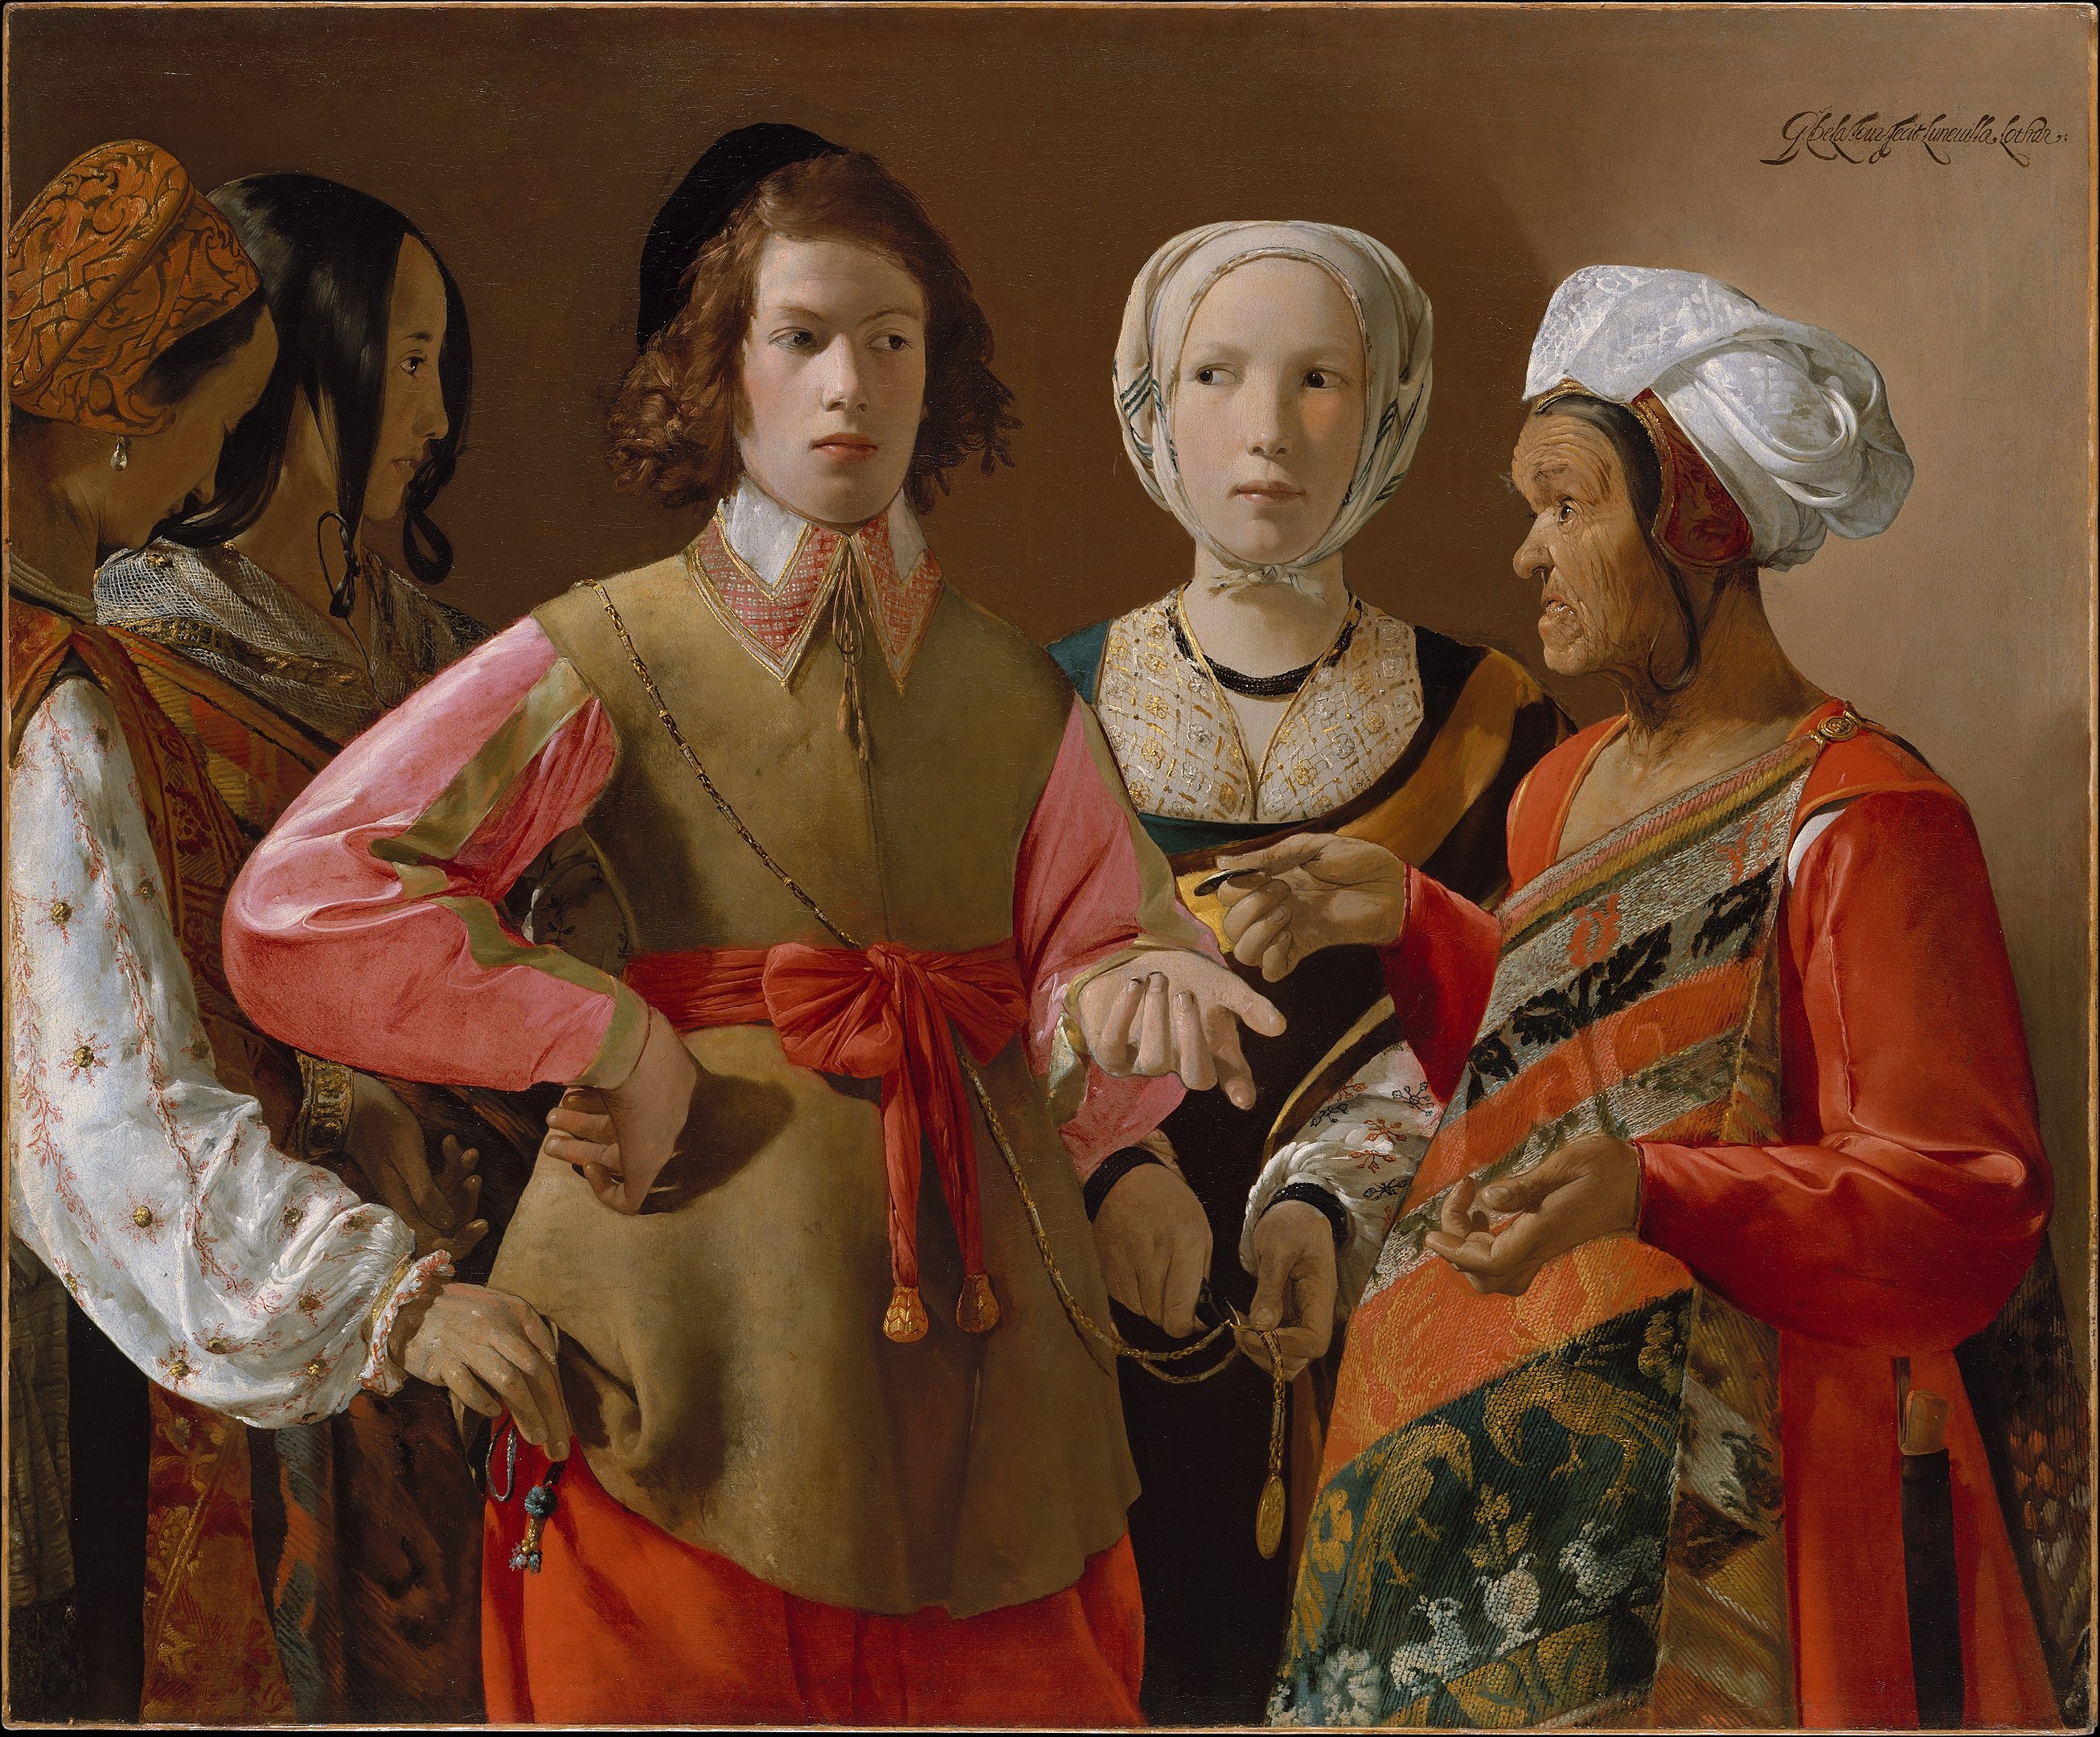 La adivina by Georges de La Tour - 1630 - 101,9 cm × 123,5 cm Museo Metropolitano de Arte